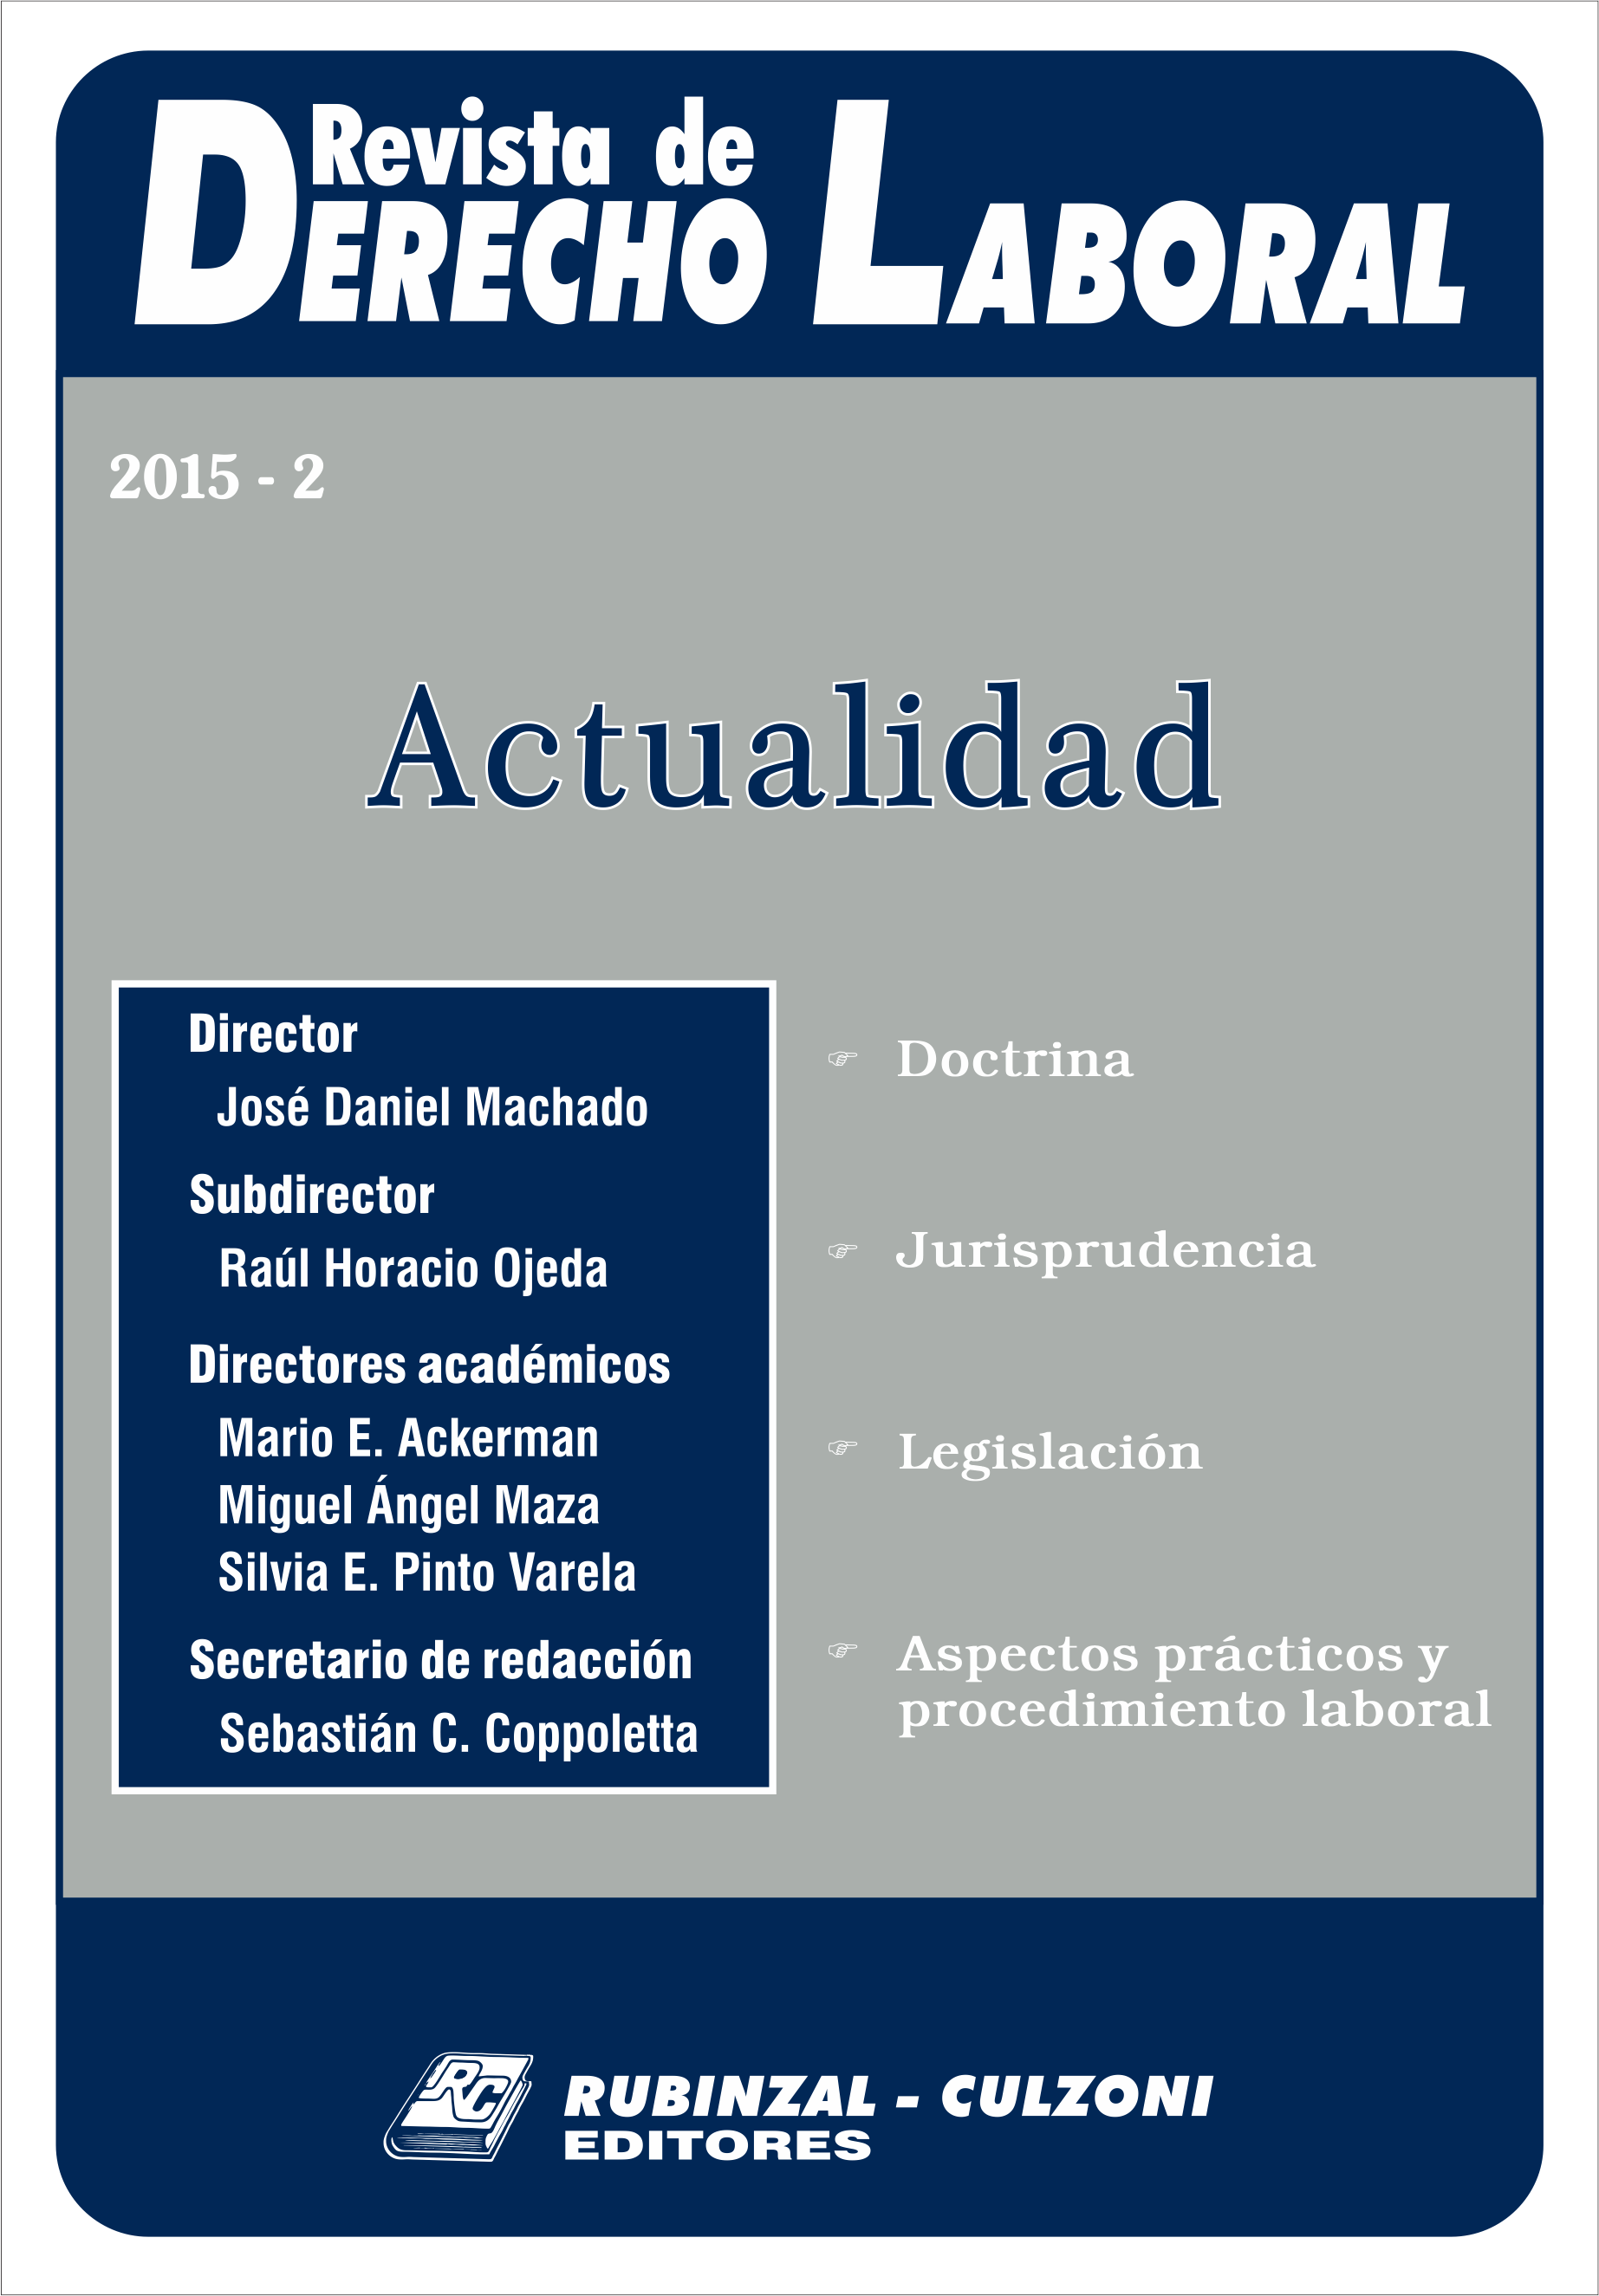 Revista de Derecho Laboral Actualidad - Año 2015 - 2